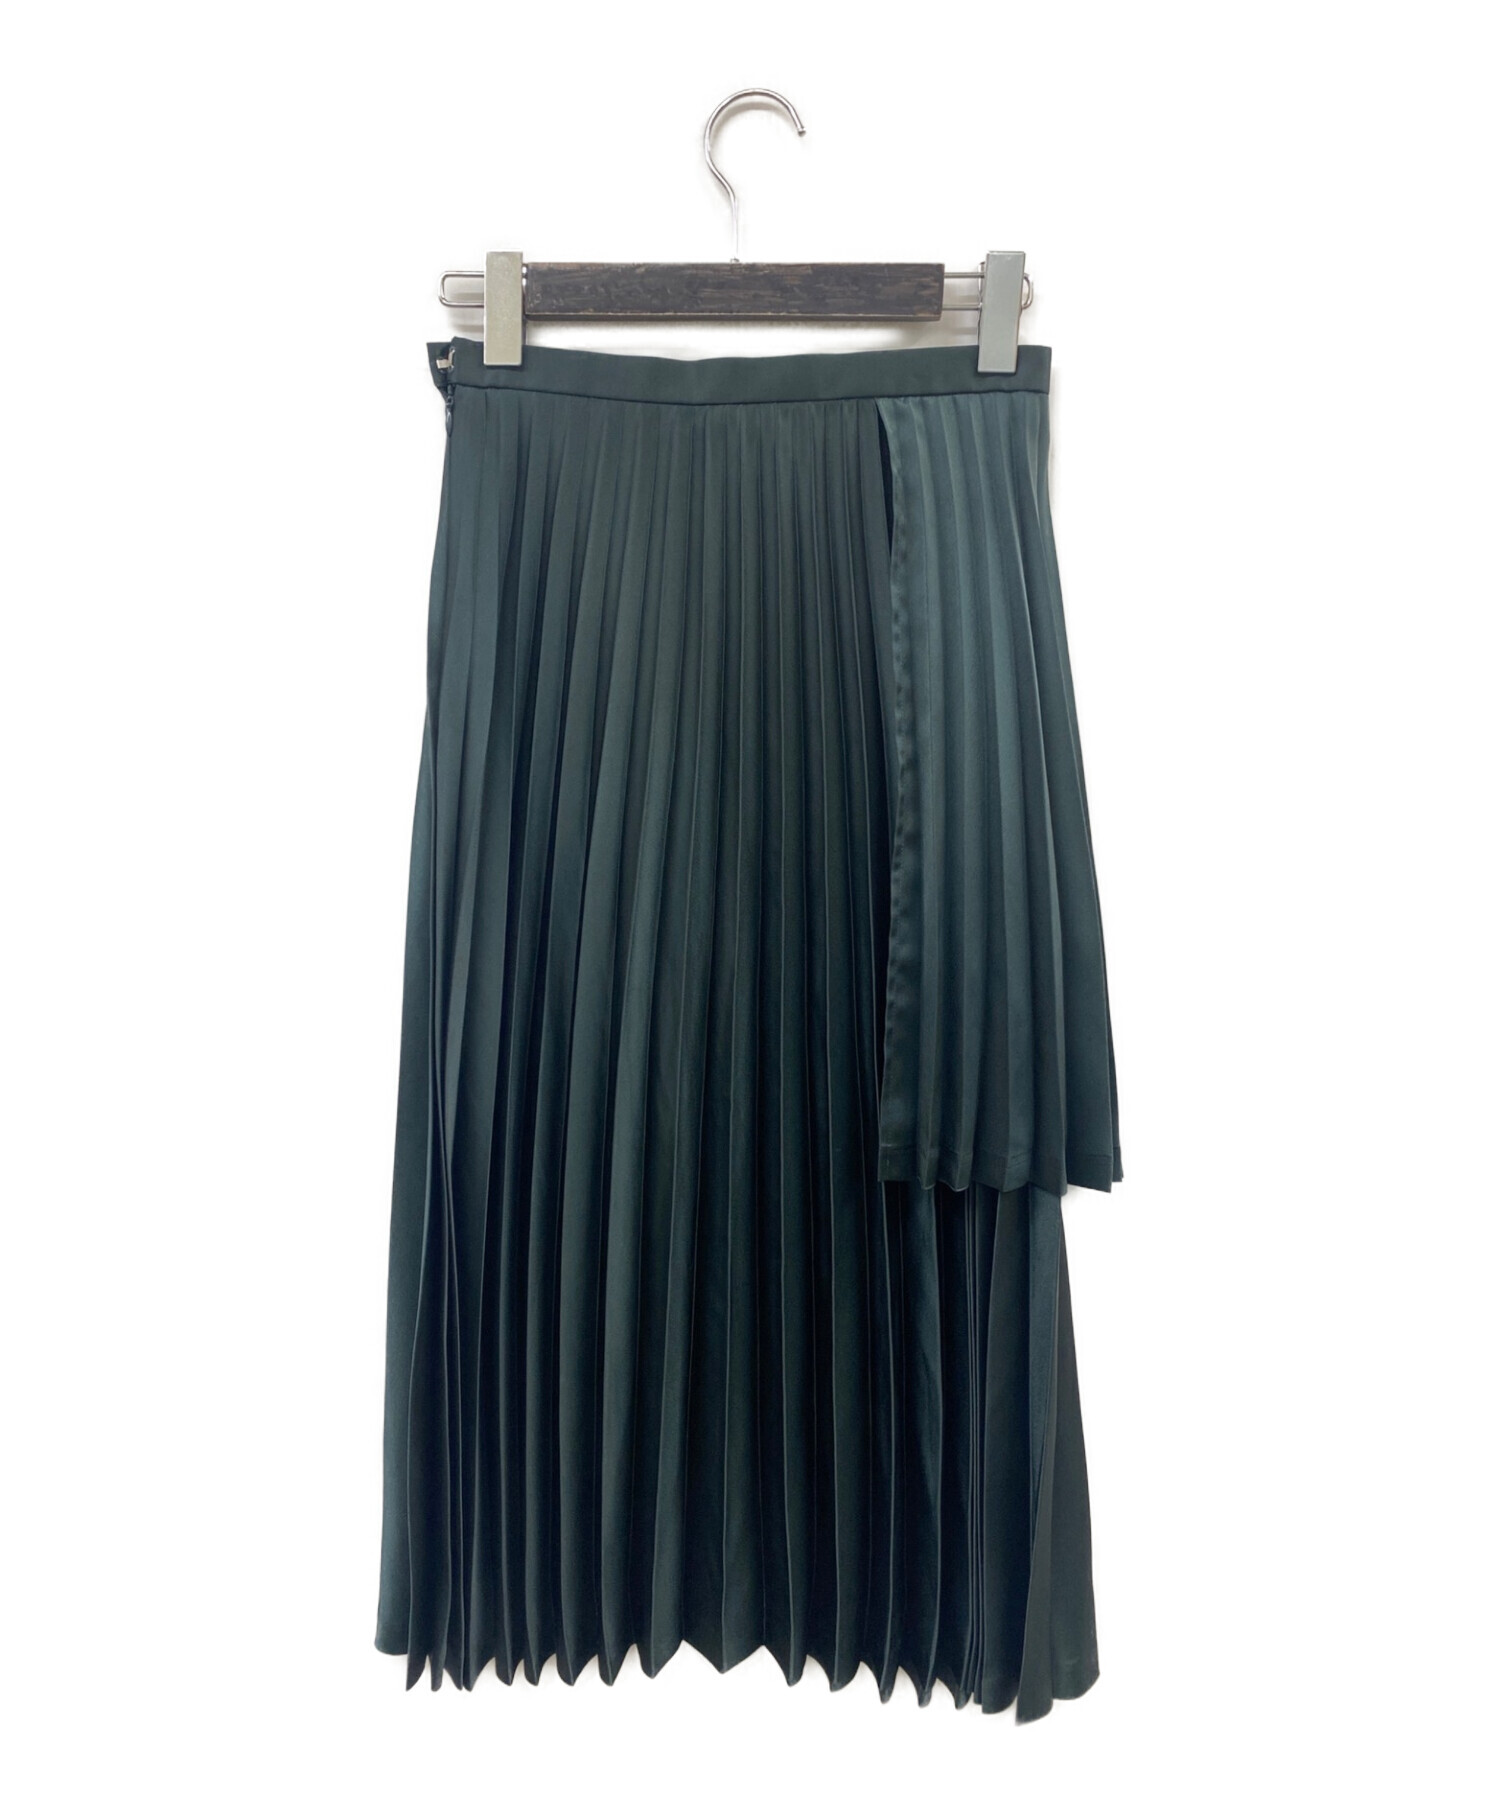 noir kei ninomiya (ノワール ケイ ニノミヤ) レイヤードプリーツスカート AD2019 グリーン サイズ:XS